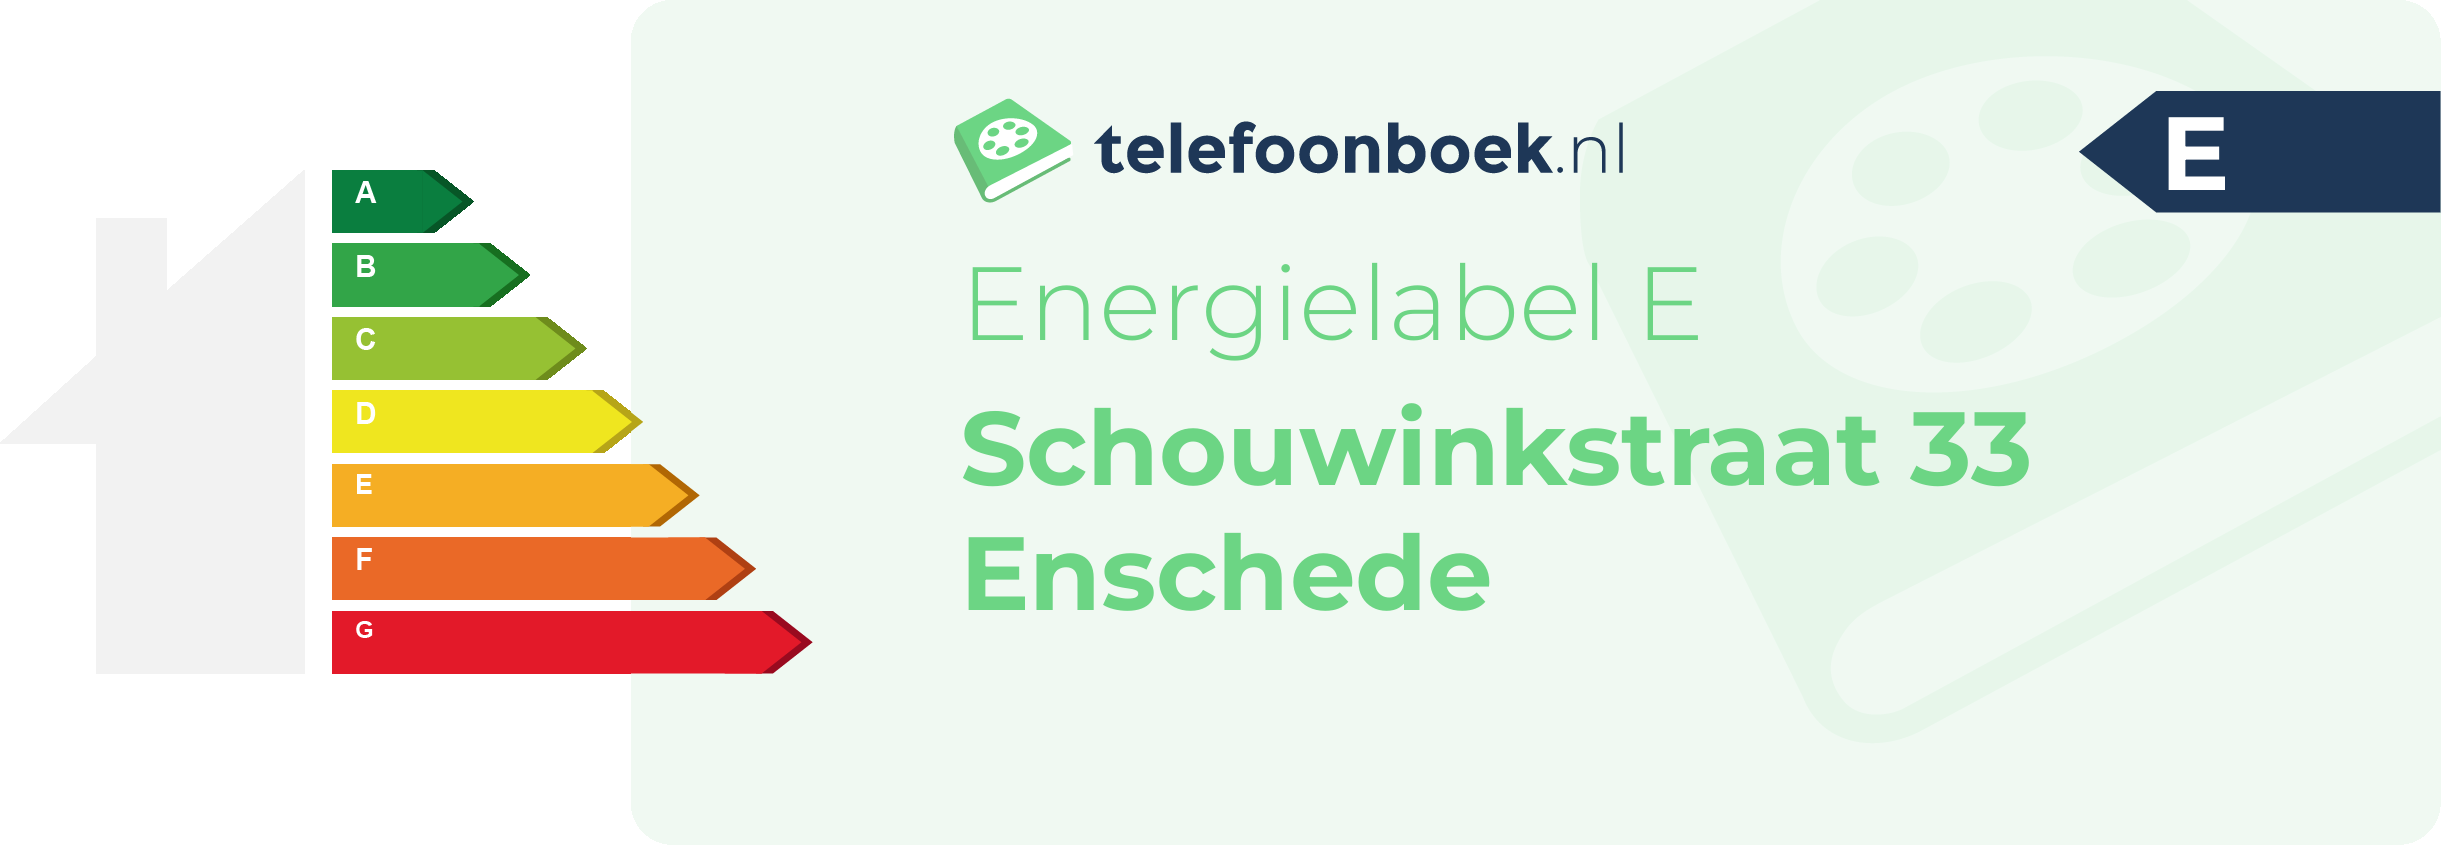 Energielabel Schouwinkstraat 33 Enschede